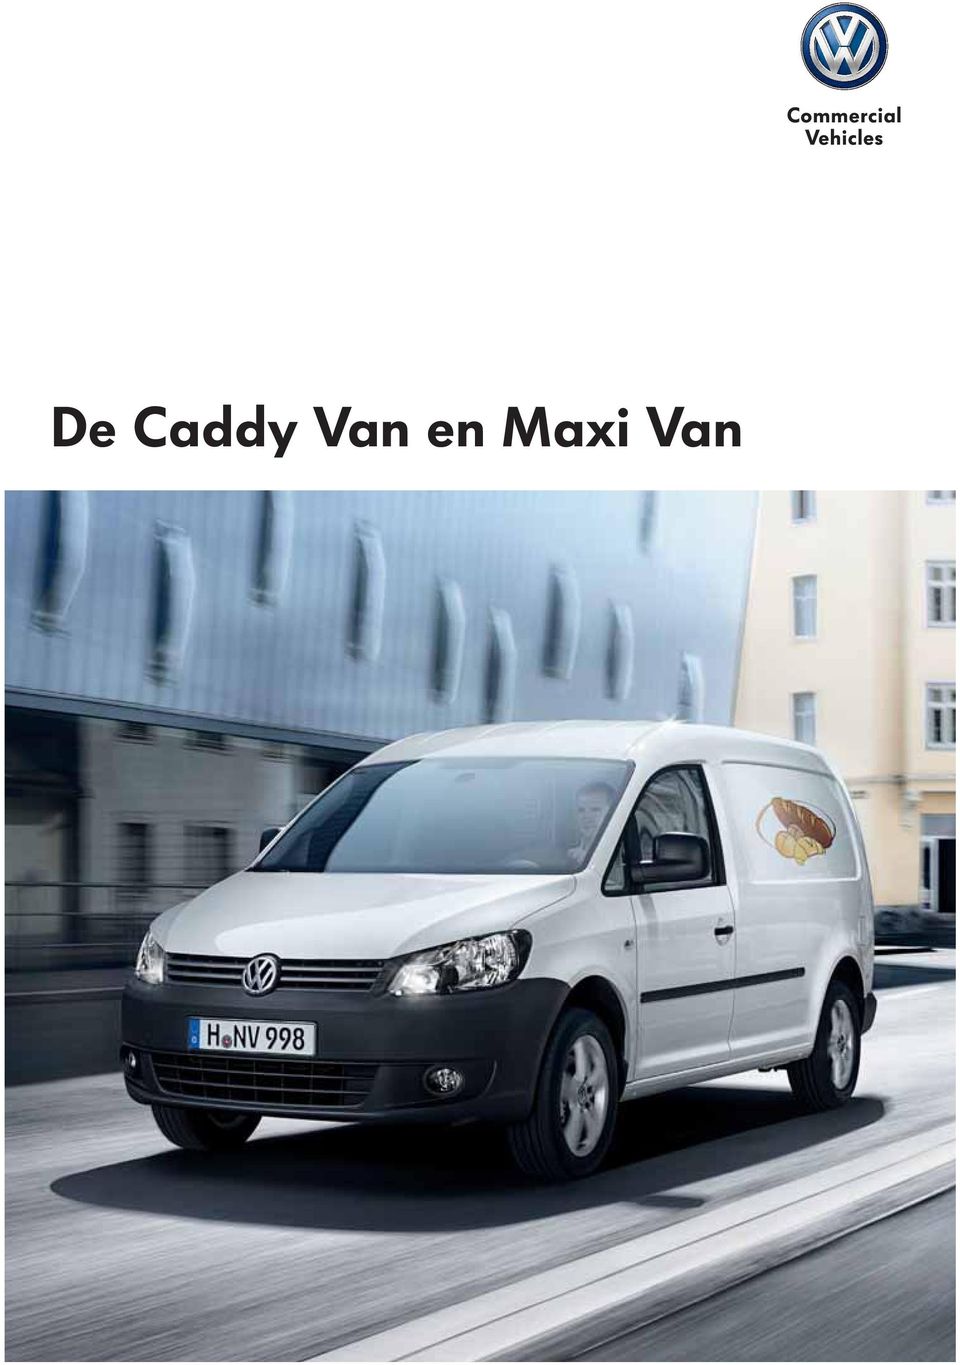 Maxi Van